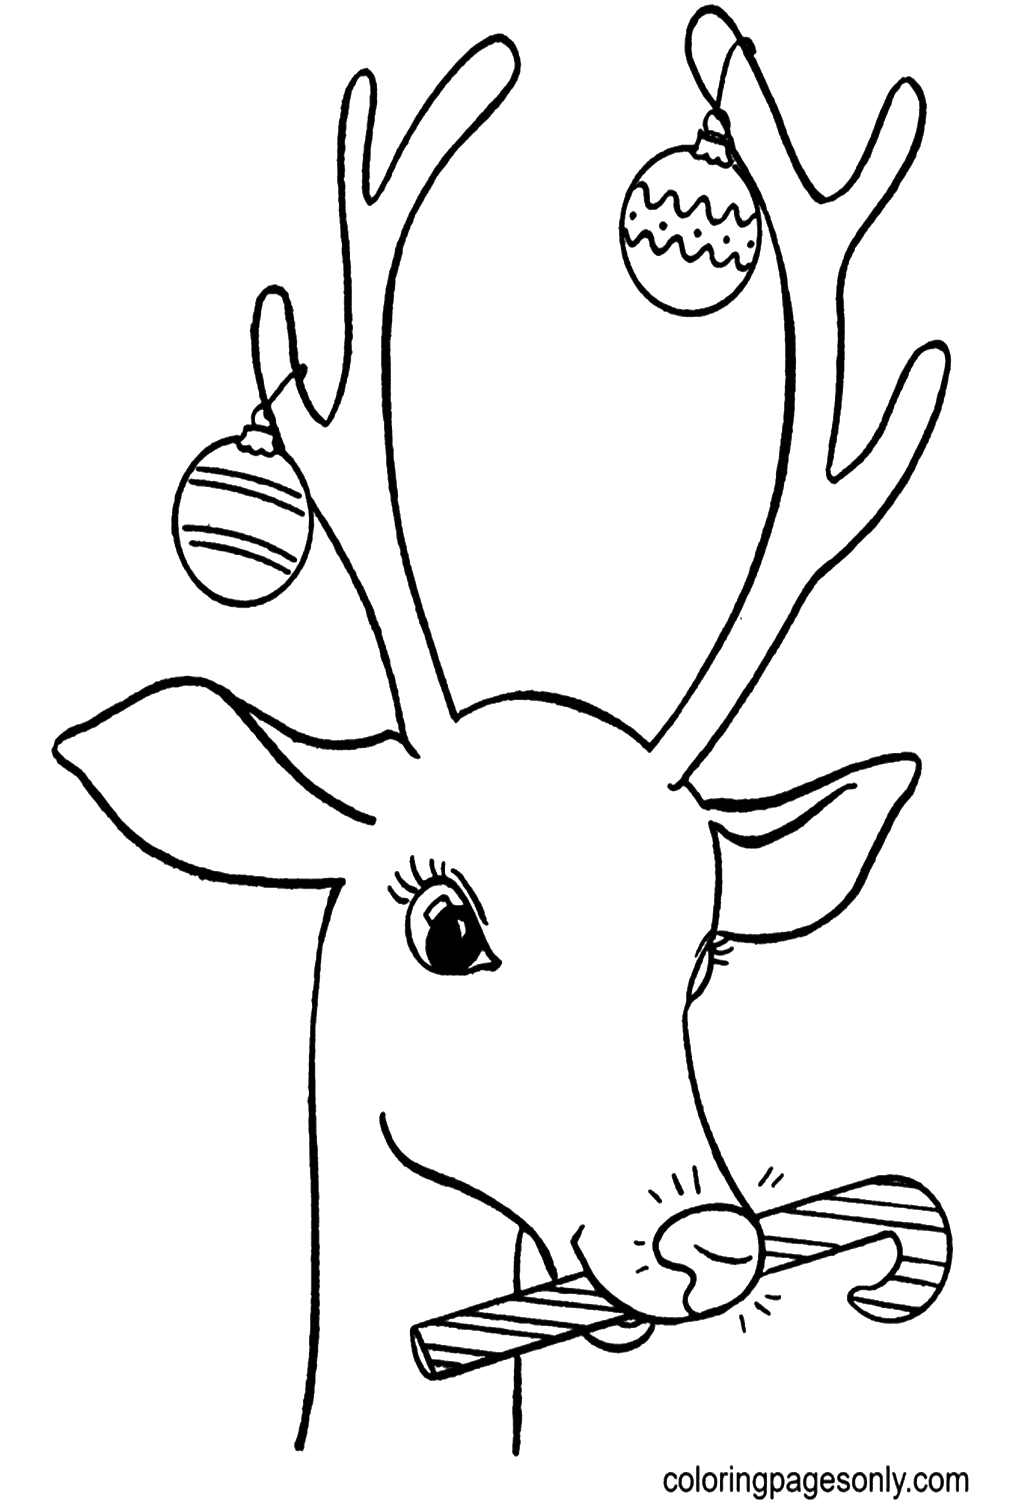 Олень с рождественскими украшениями из оленей